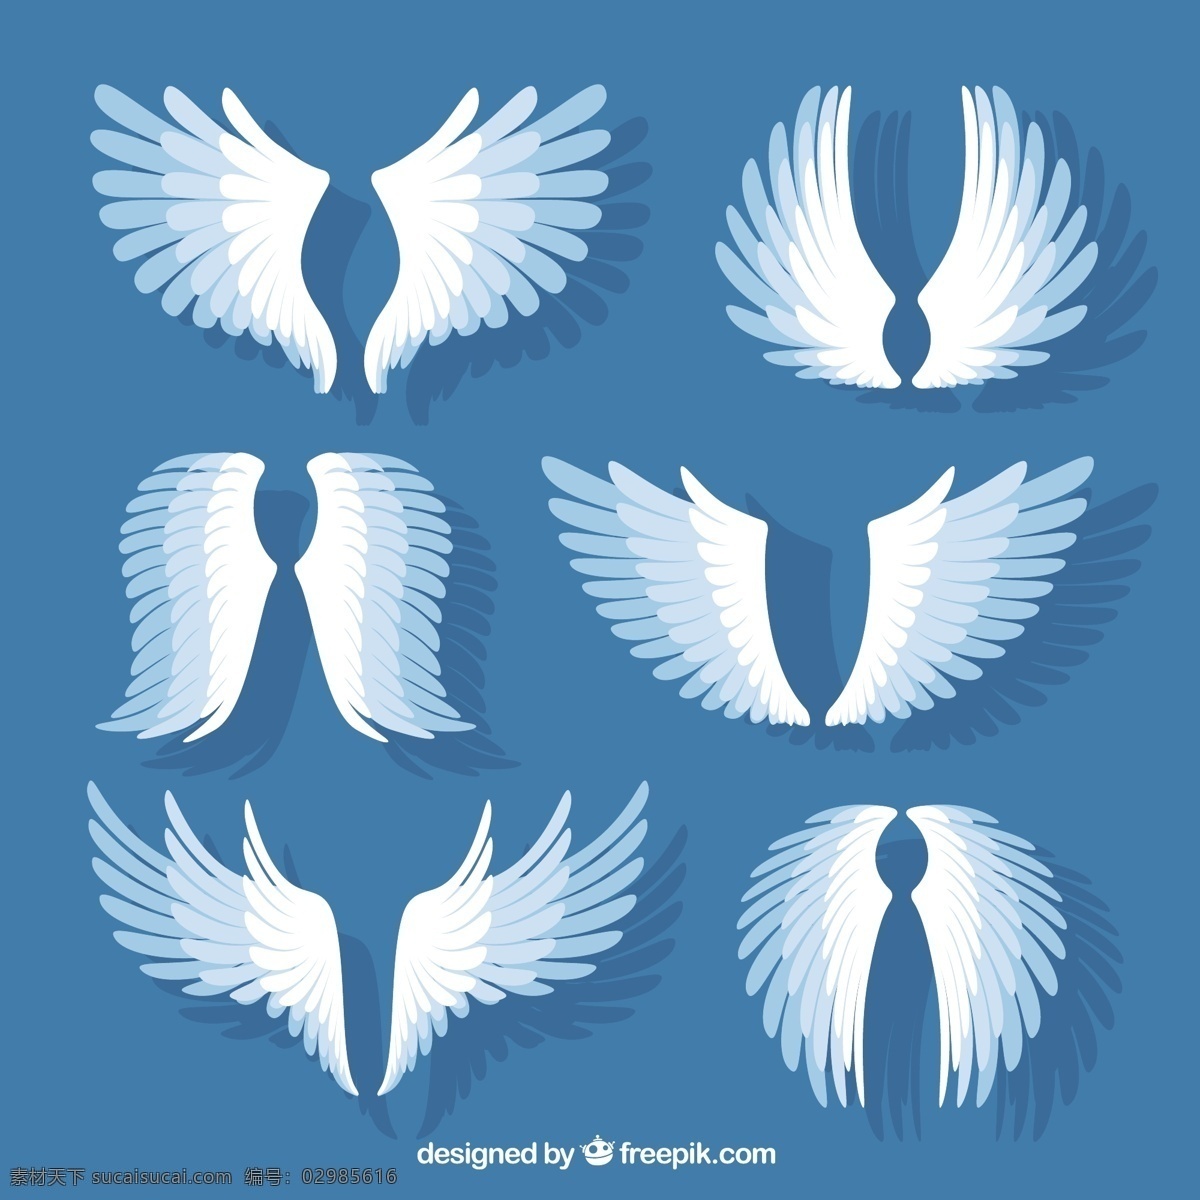 白色 翅膀 元素 平面设计 翅膀元素 平面设计素材